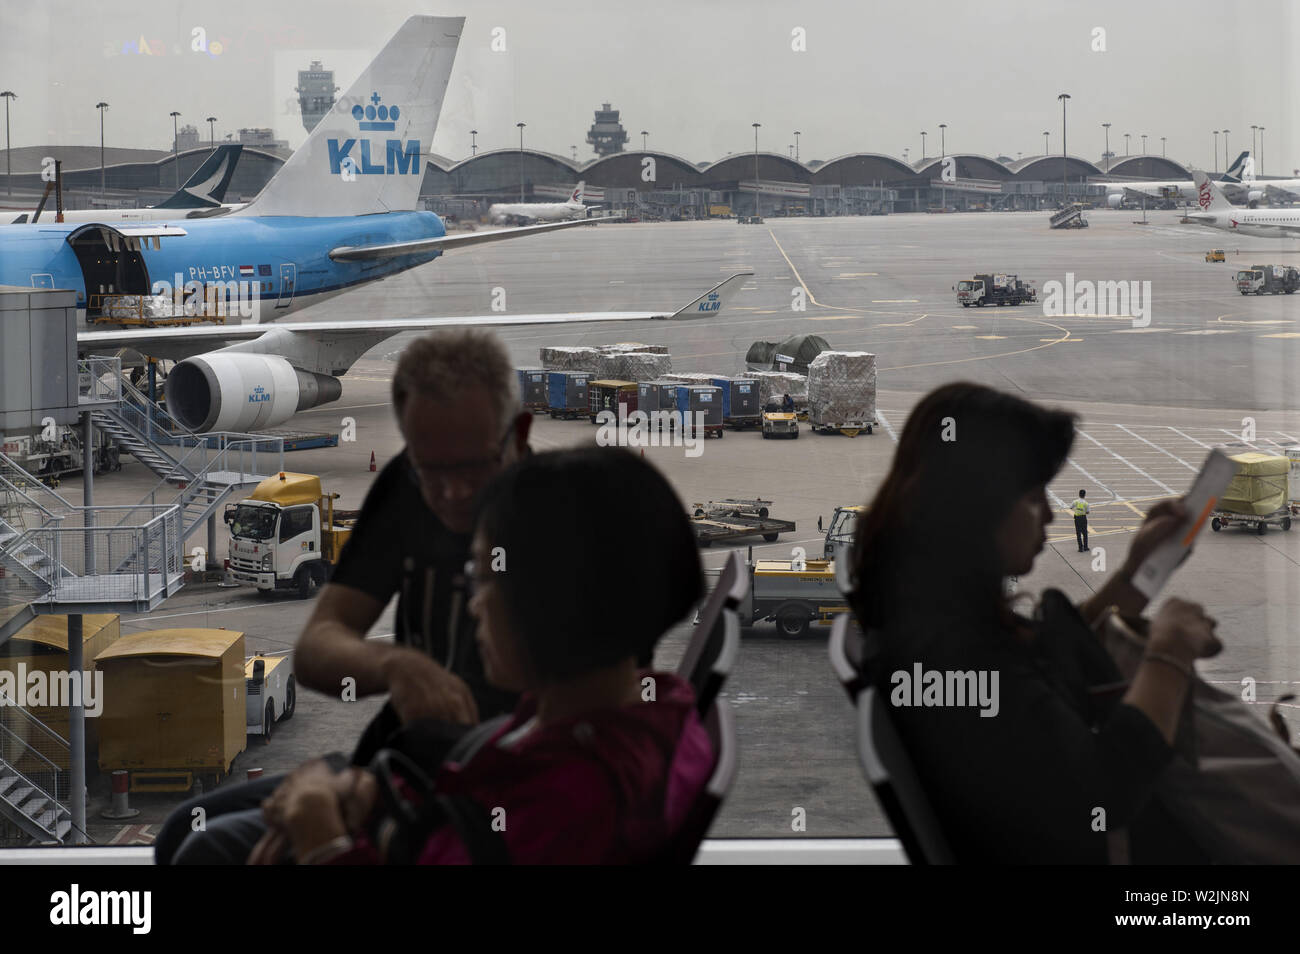 Hong Kong, China. 23rd May, 2019. Passengers seated at the waiting area at a boarding gate next to a KLM Royal Dutch Airlines plane at Hong Kong Airport runway. Credit: Budrul Chukrut/SOPA Images/ZUMA Wire/Alamy Live News Stock Photo